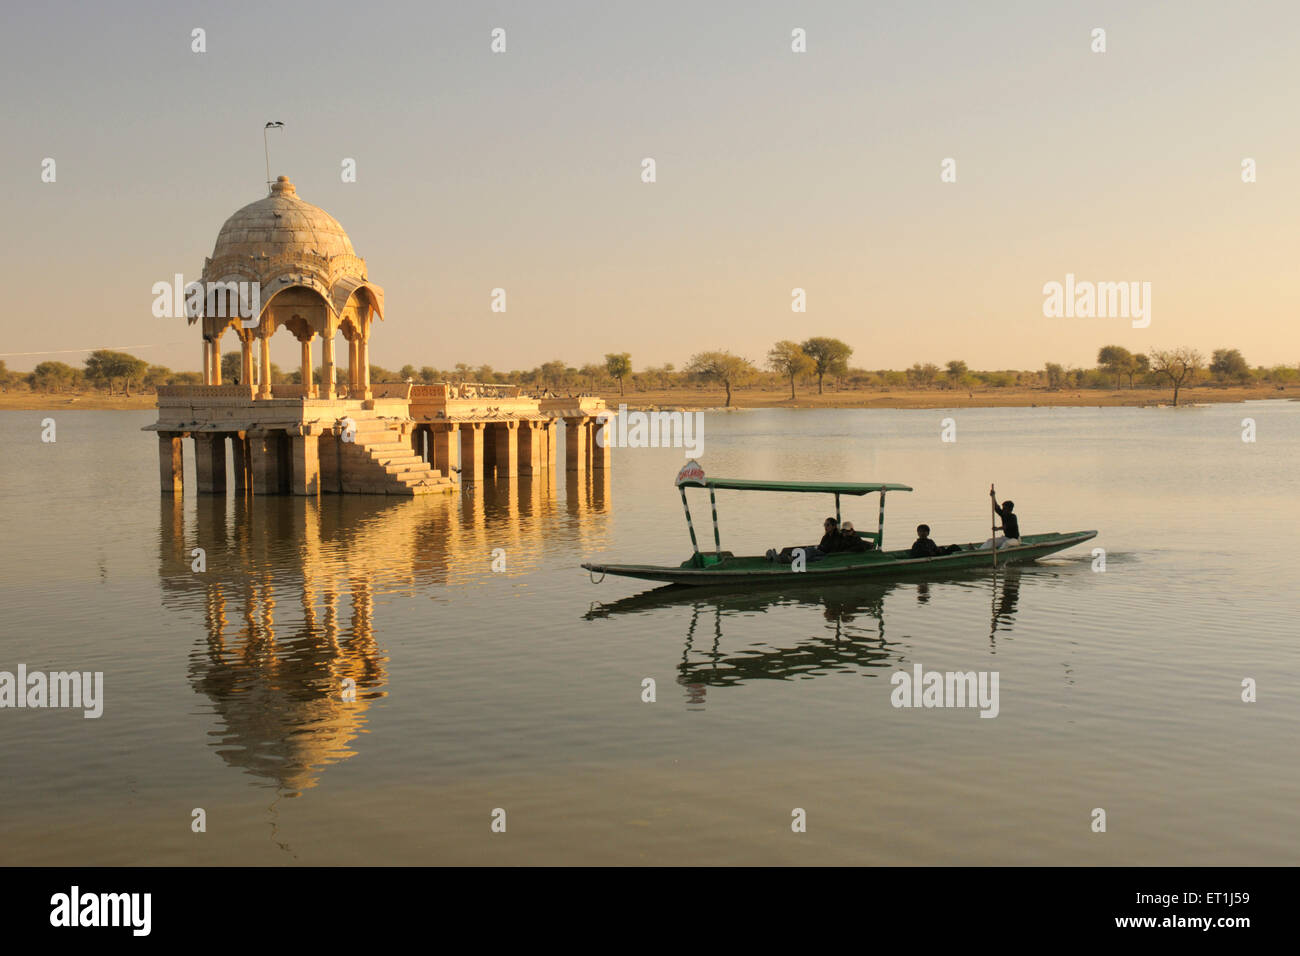 Chhatri cénotaphe appelé réflexion et voile connu dans l'eau de shikara Gadsisar Gadisar lake ou ; ; ; Inde Rajasthan Jaisalmer Banque D'Images